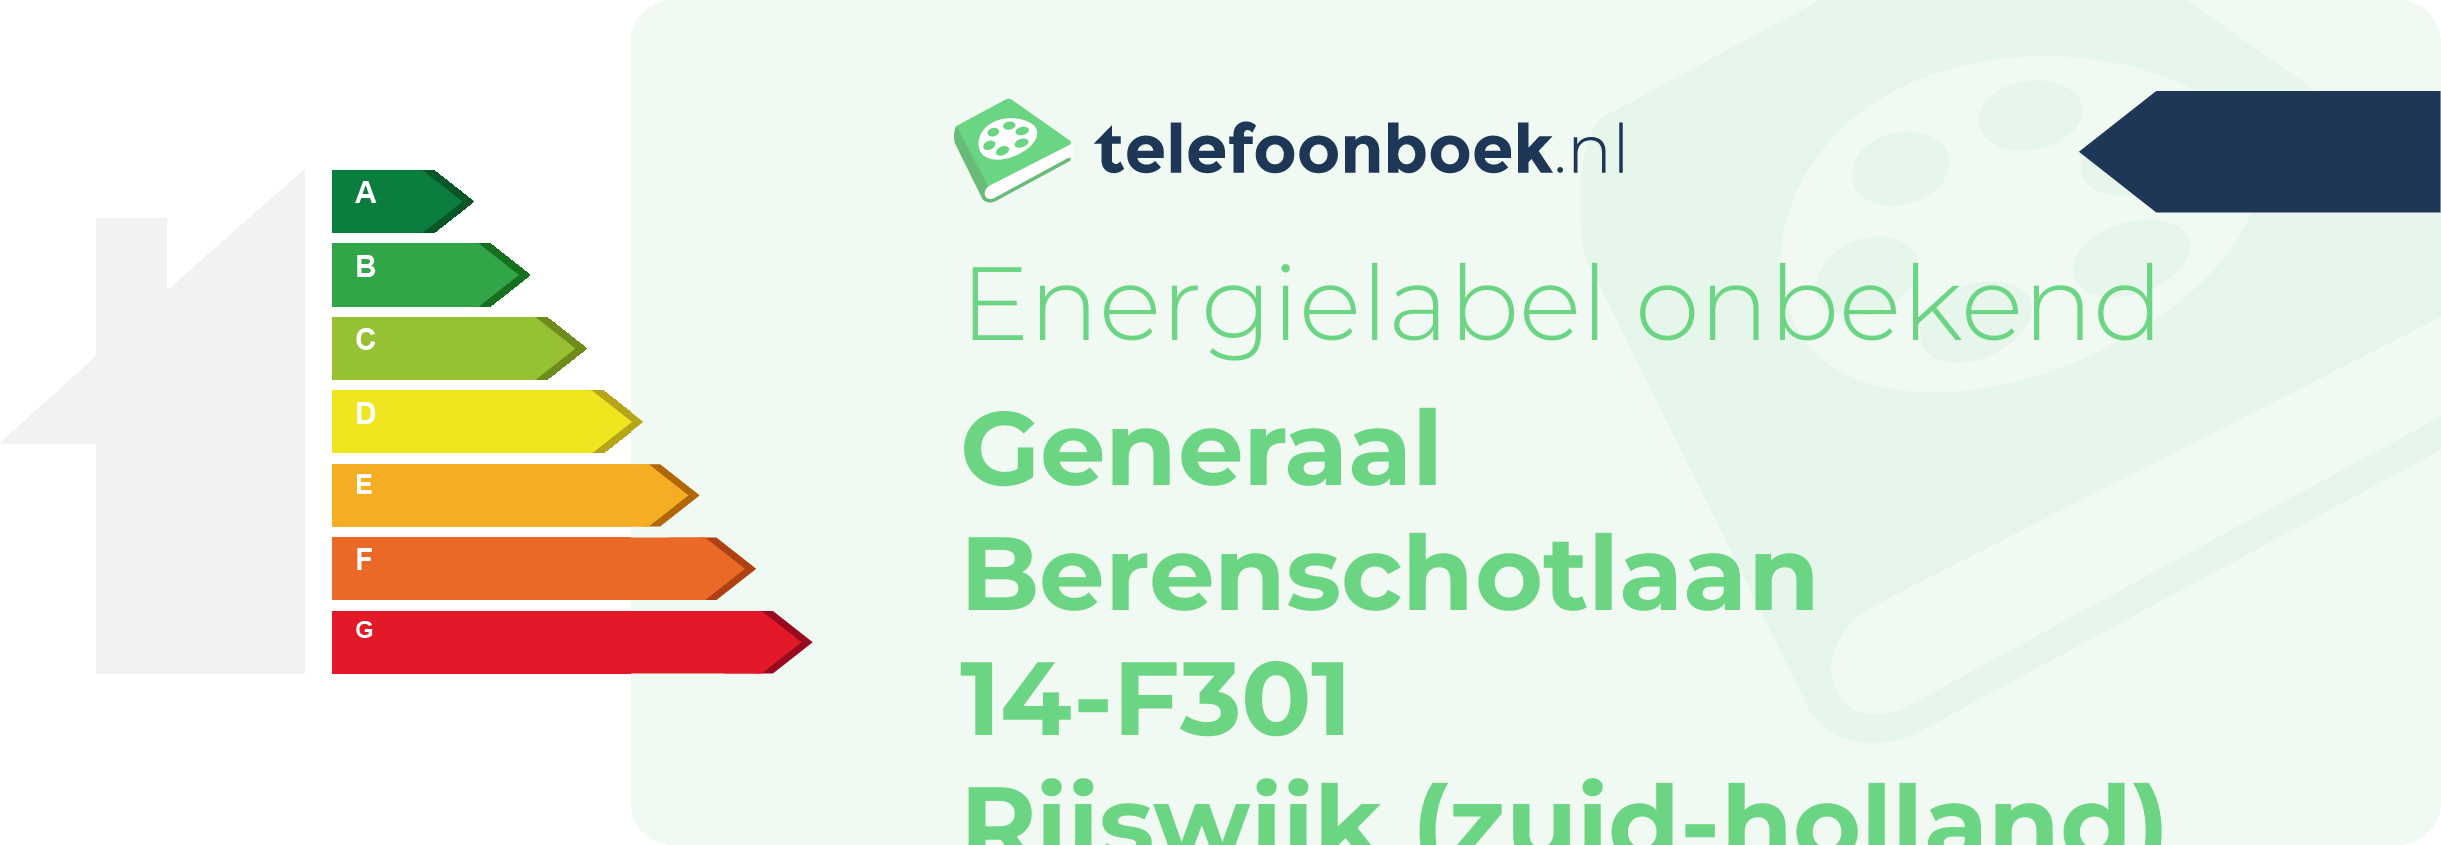 Energielabel Generaal Berenschotlaan 14-F301 Rijswijk (Zuid-Holland)